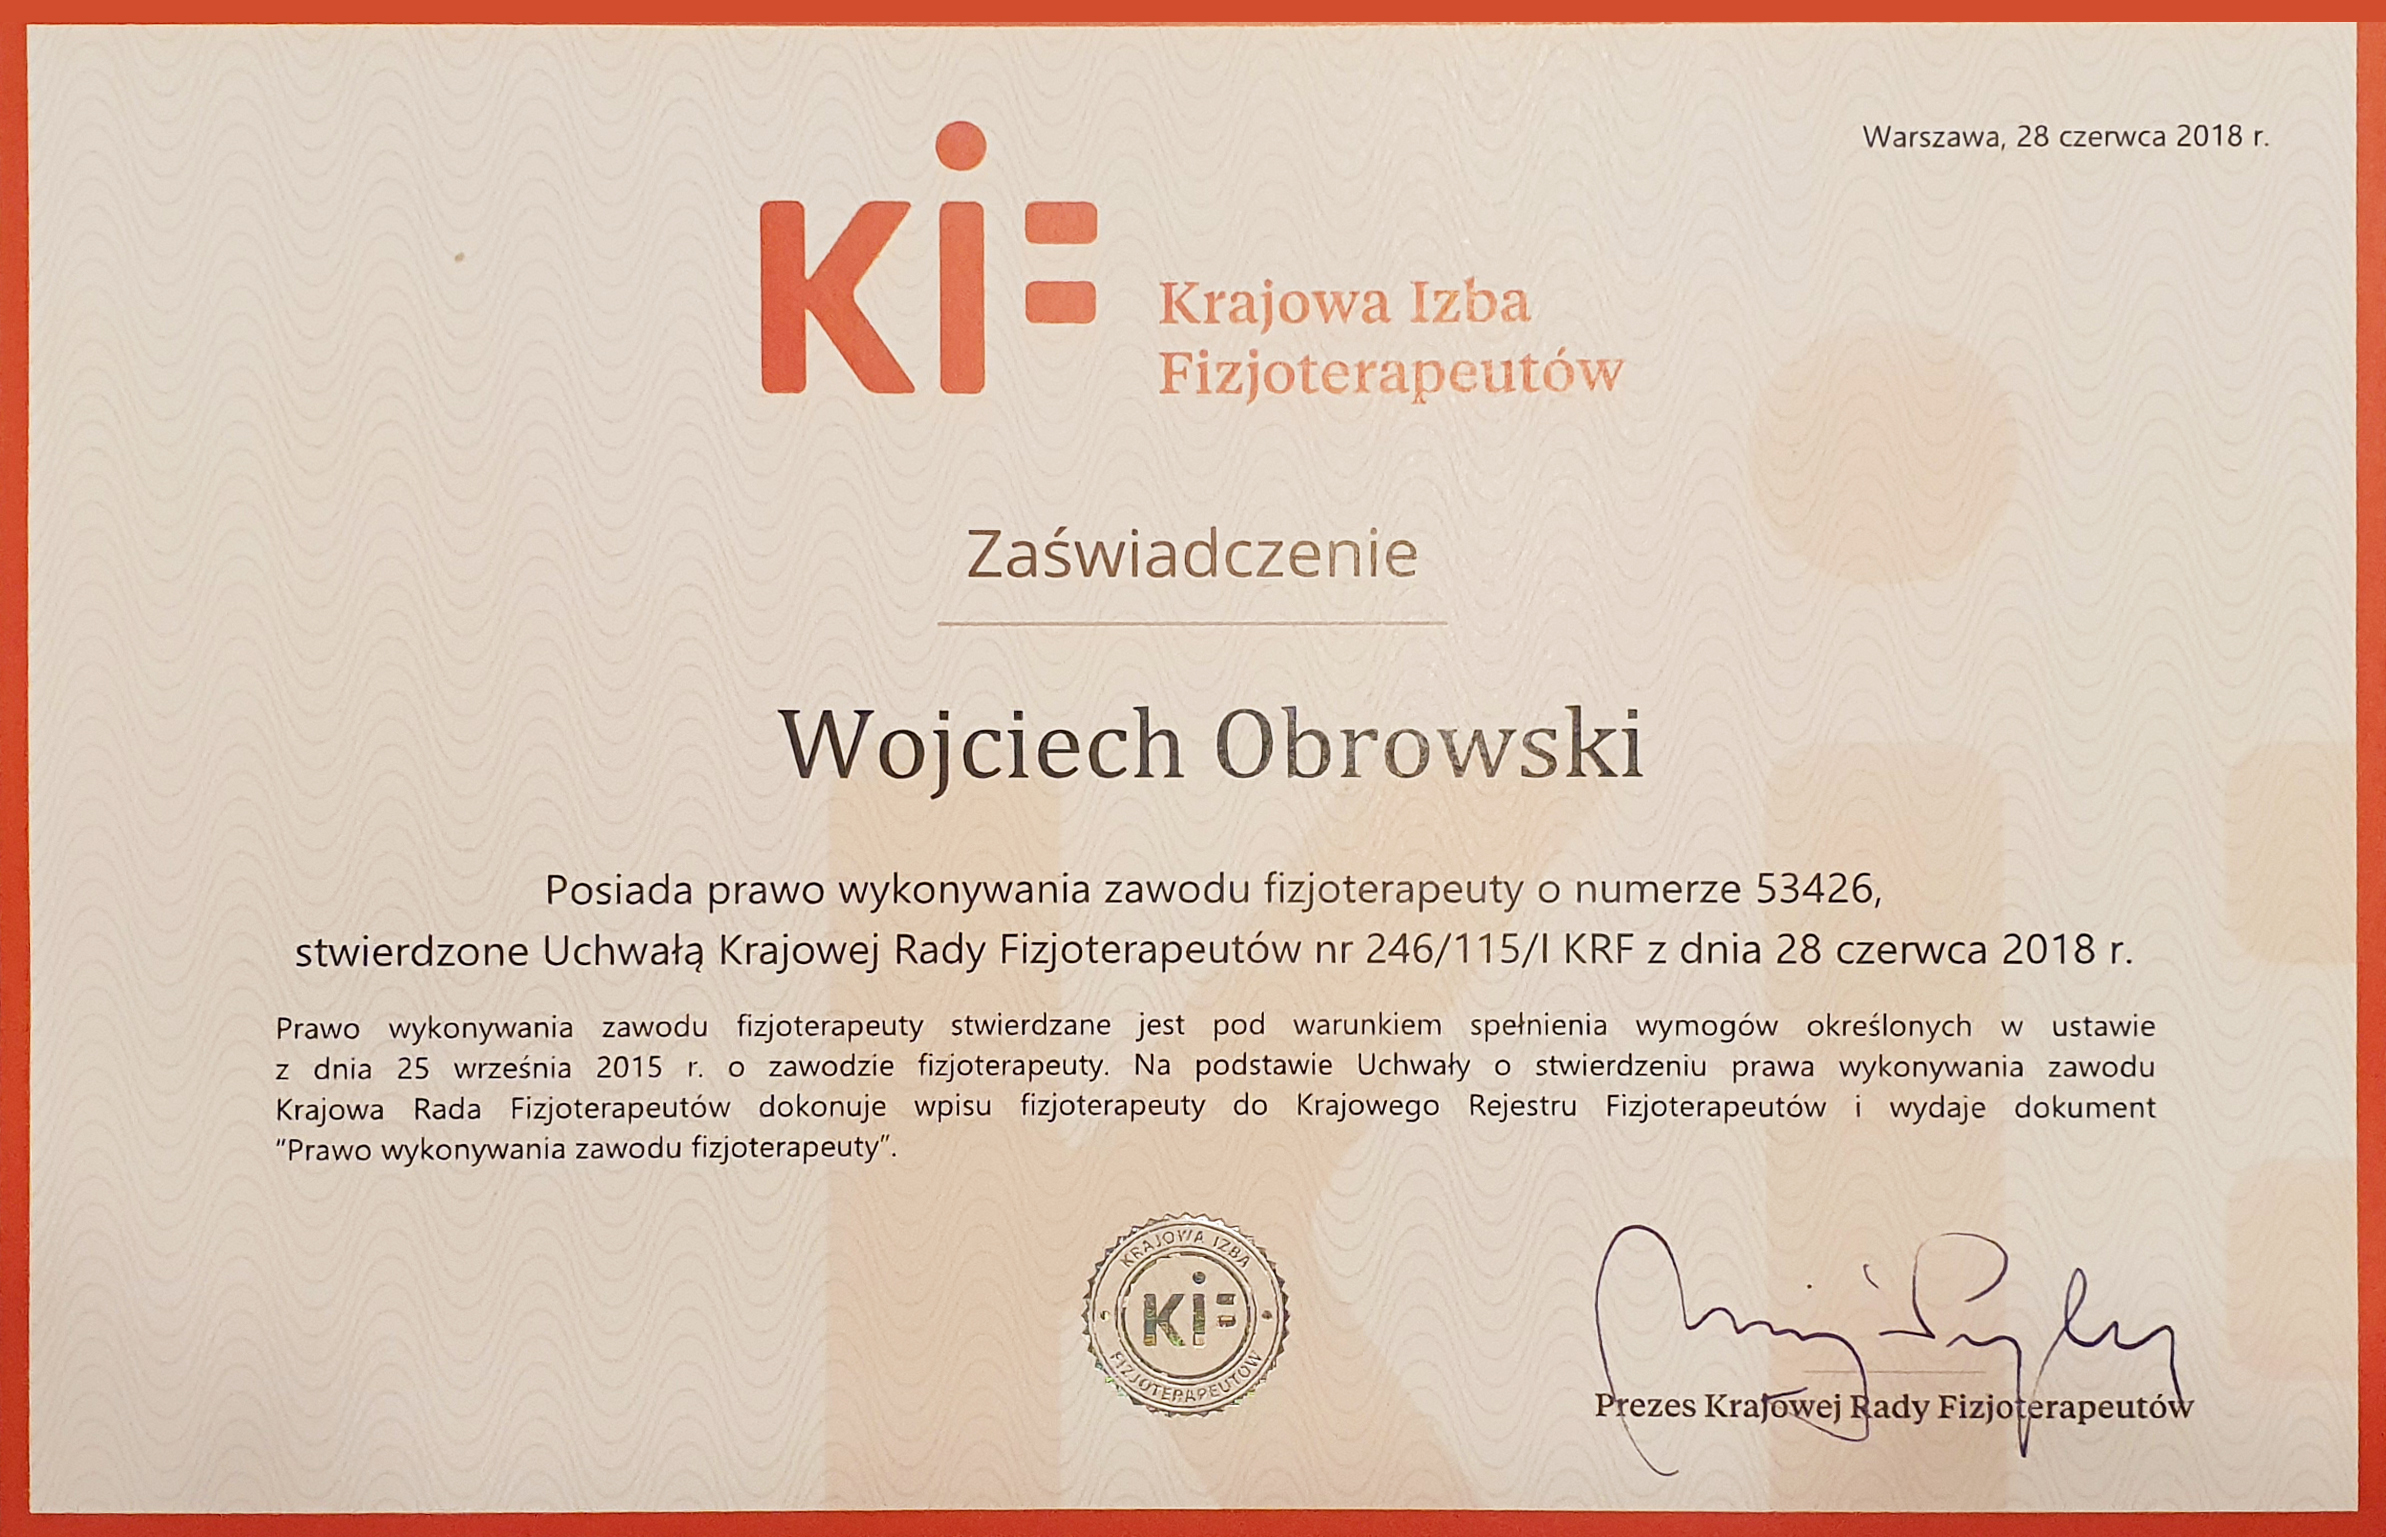 Wojciech Obrowski zaswiadczenie KIF